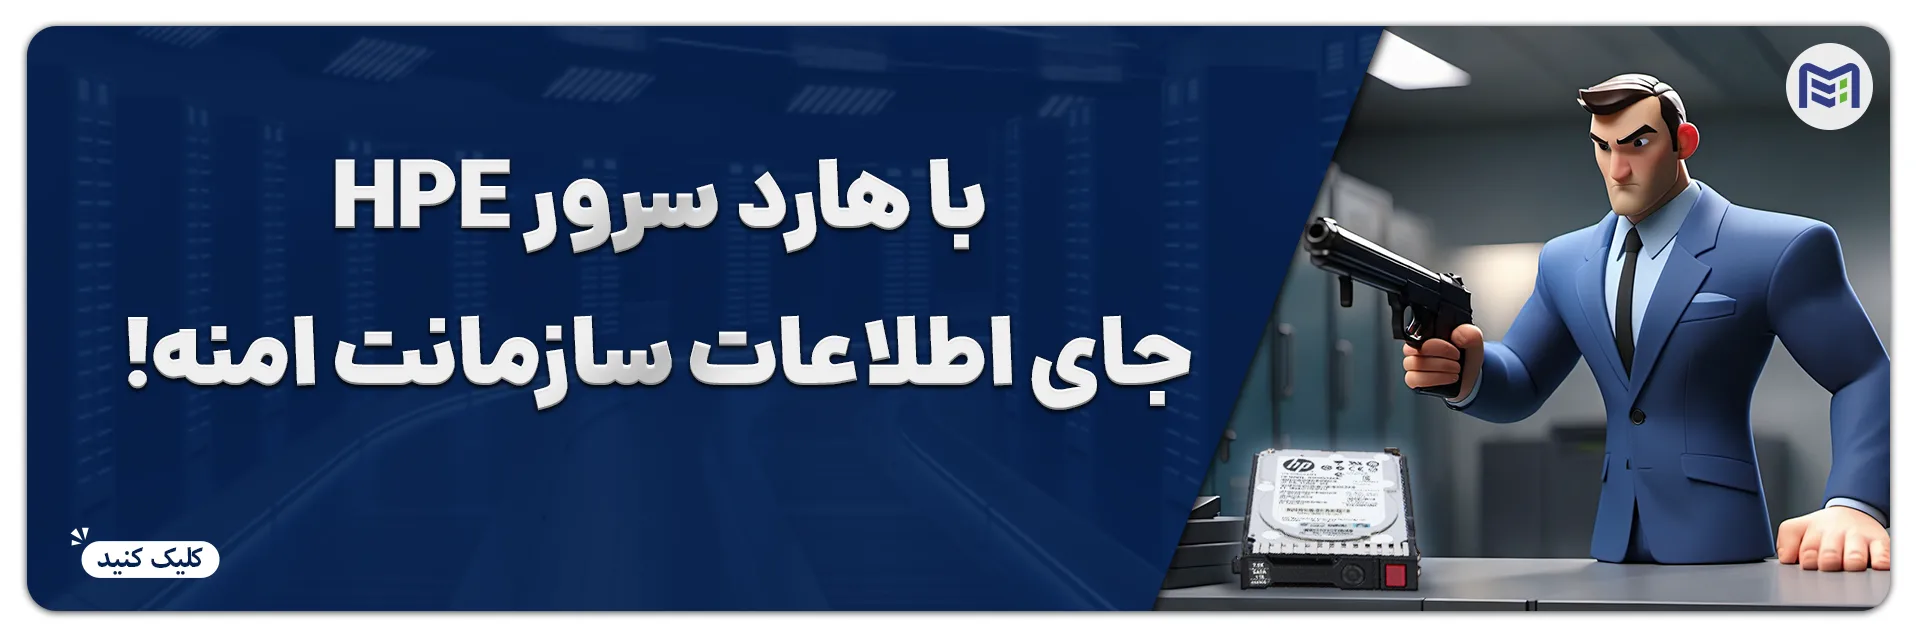 خرید انواع هارد سرور HPE ماهان شبکه ایرانیان